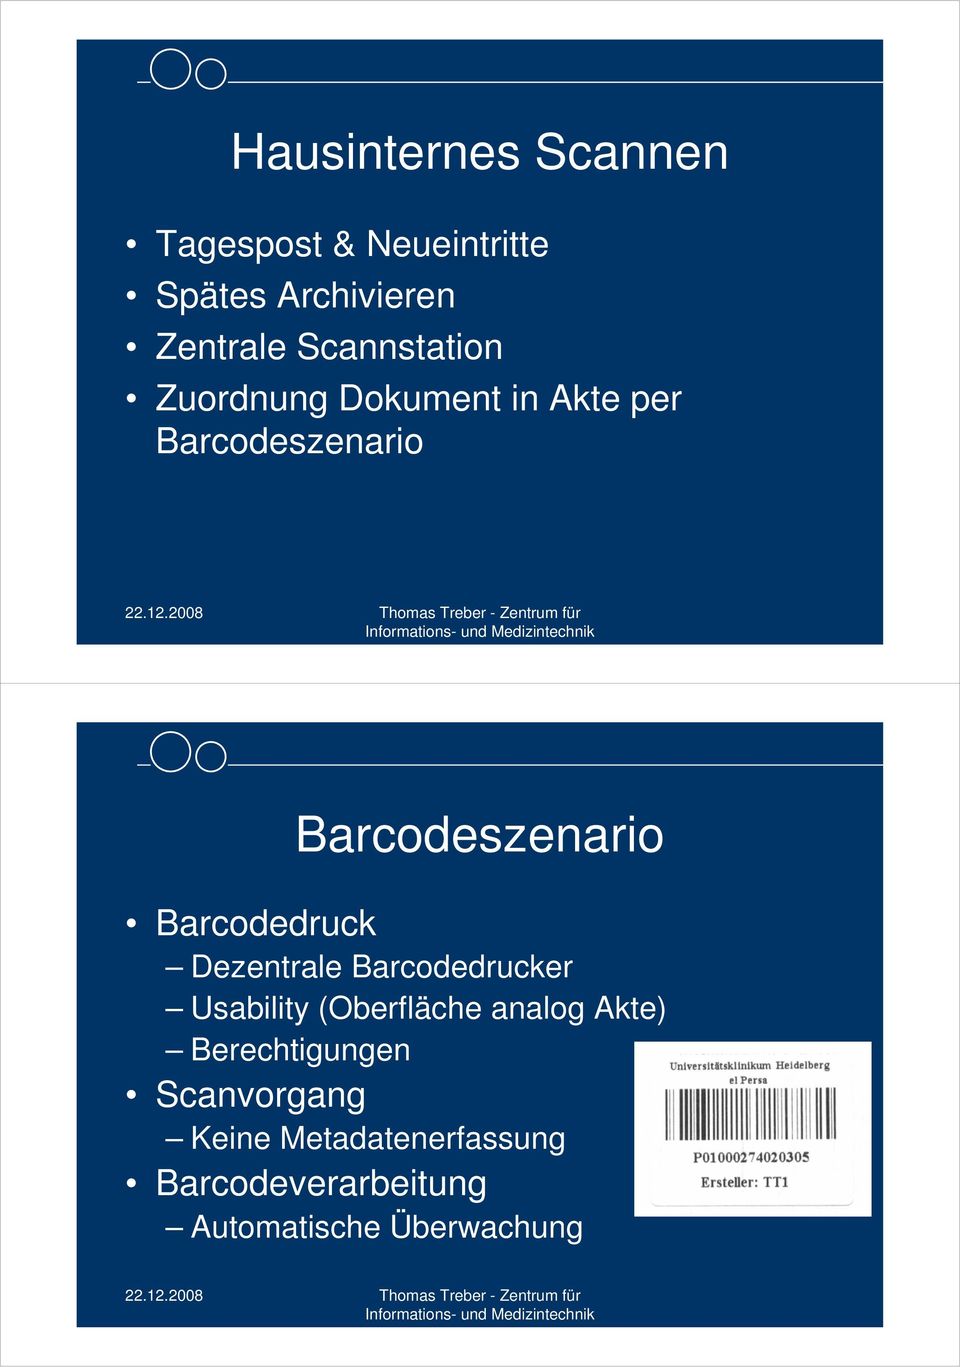 Barcodedruck Dezentrale Barcodedrucker Usability (Oberfläche analog Akte)